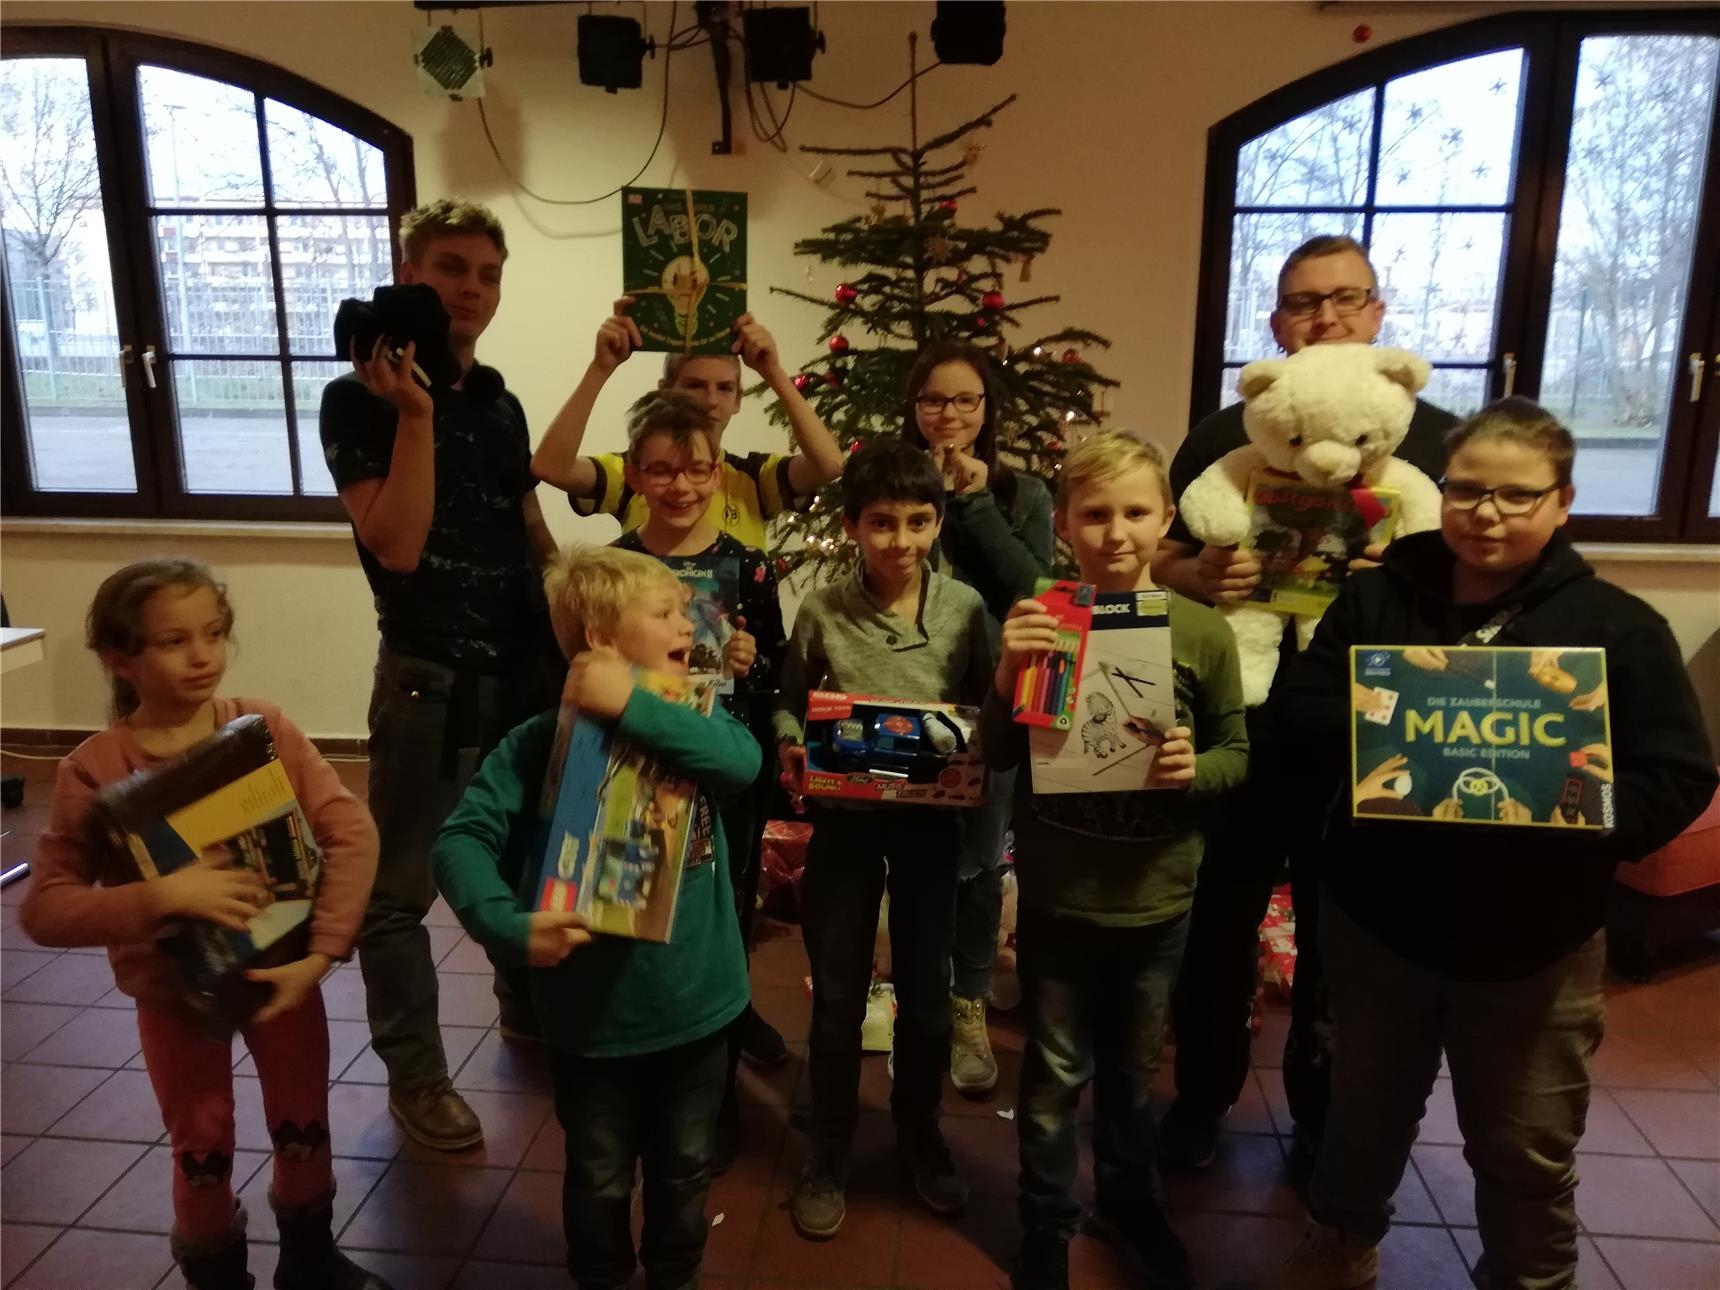 Kinder und Jugendliche des Jugend- und Sozialzentrums "Mutter Teresa" mit den Geschenken des Wunschbaums (Christian Reich)